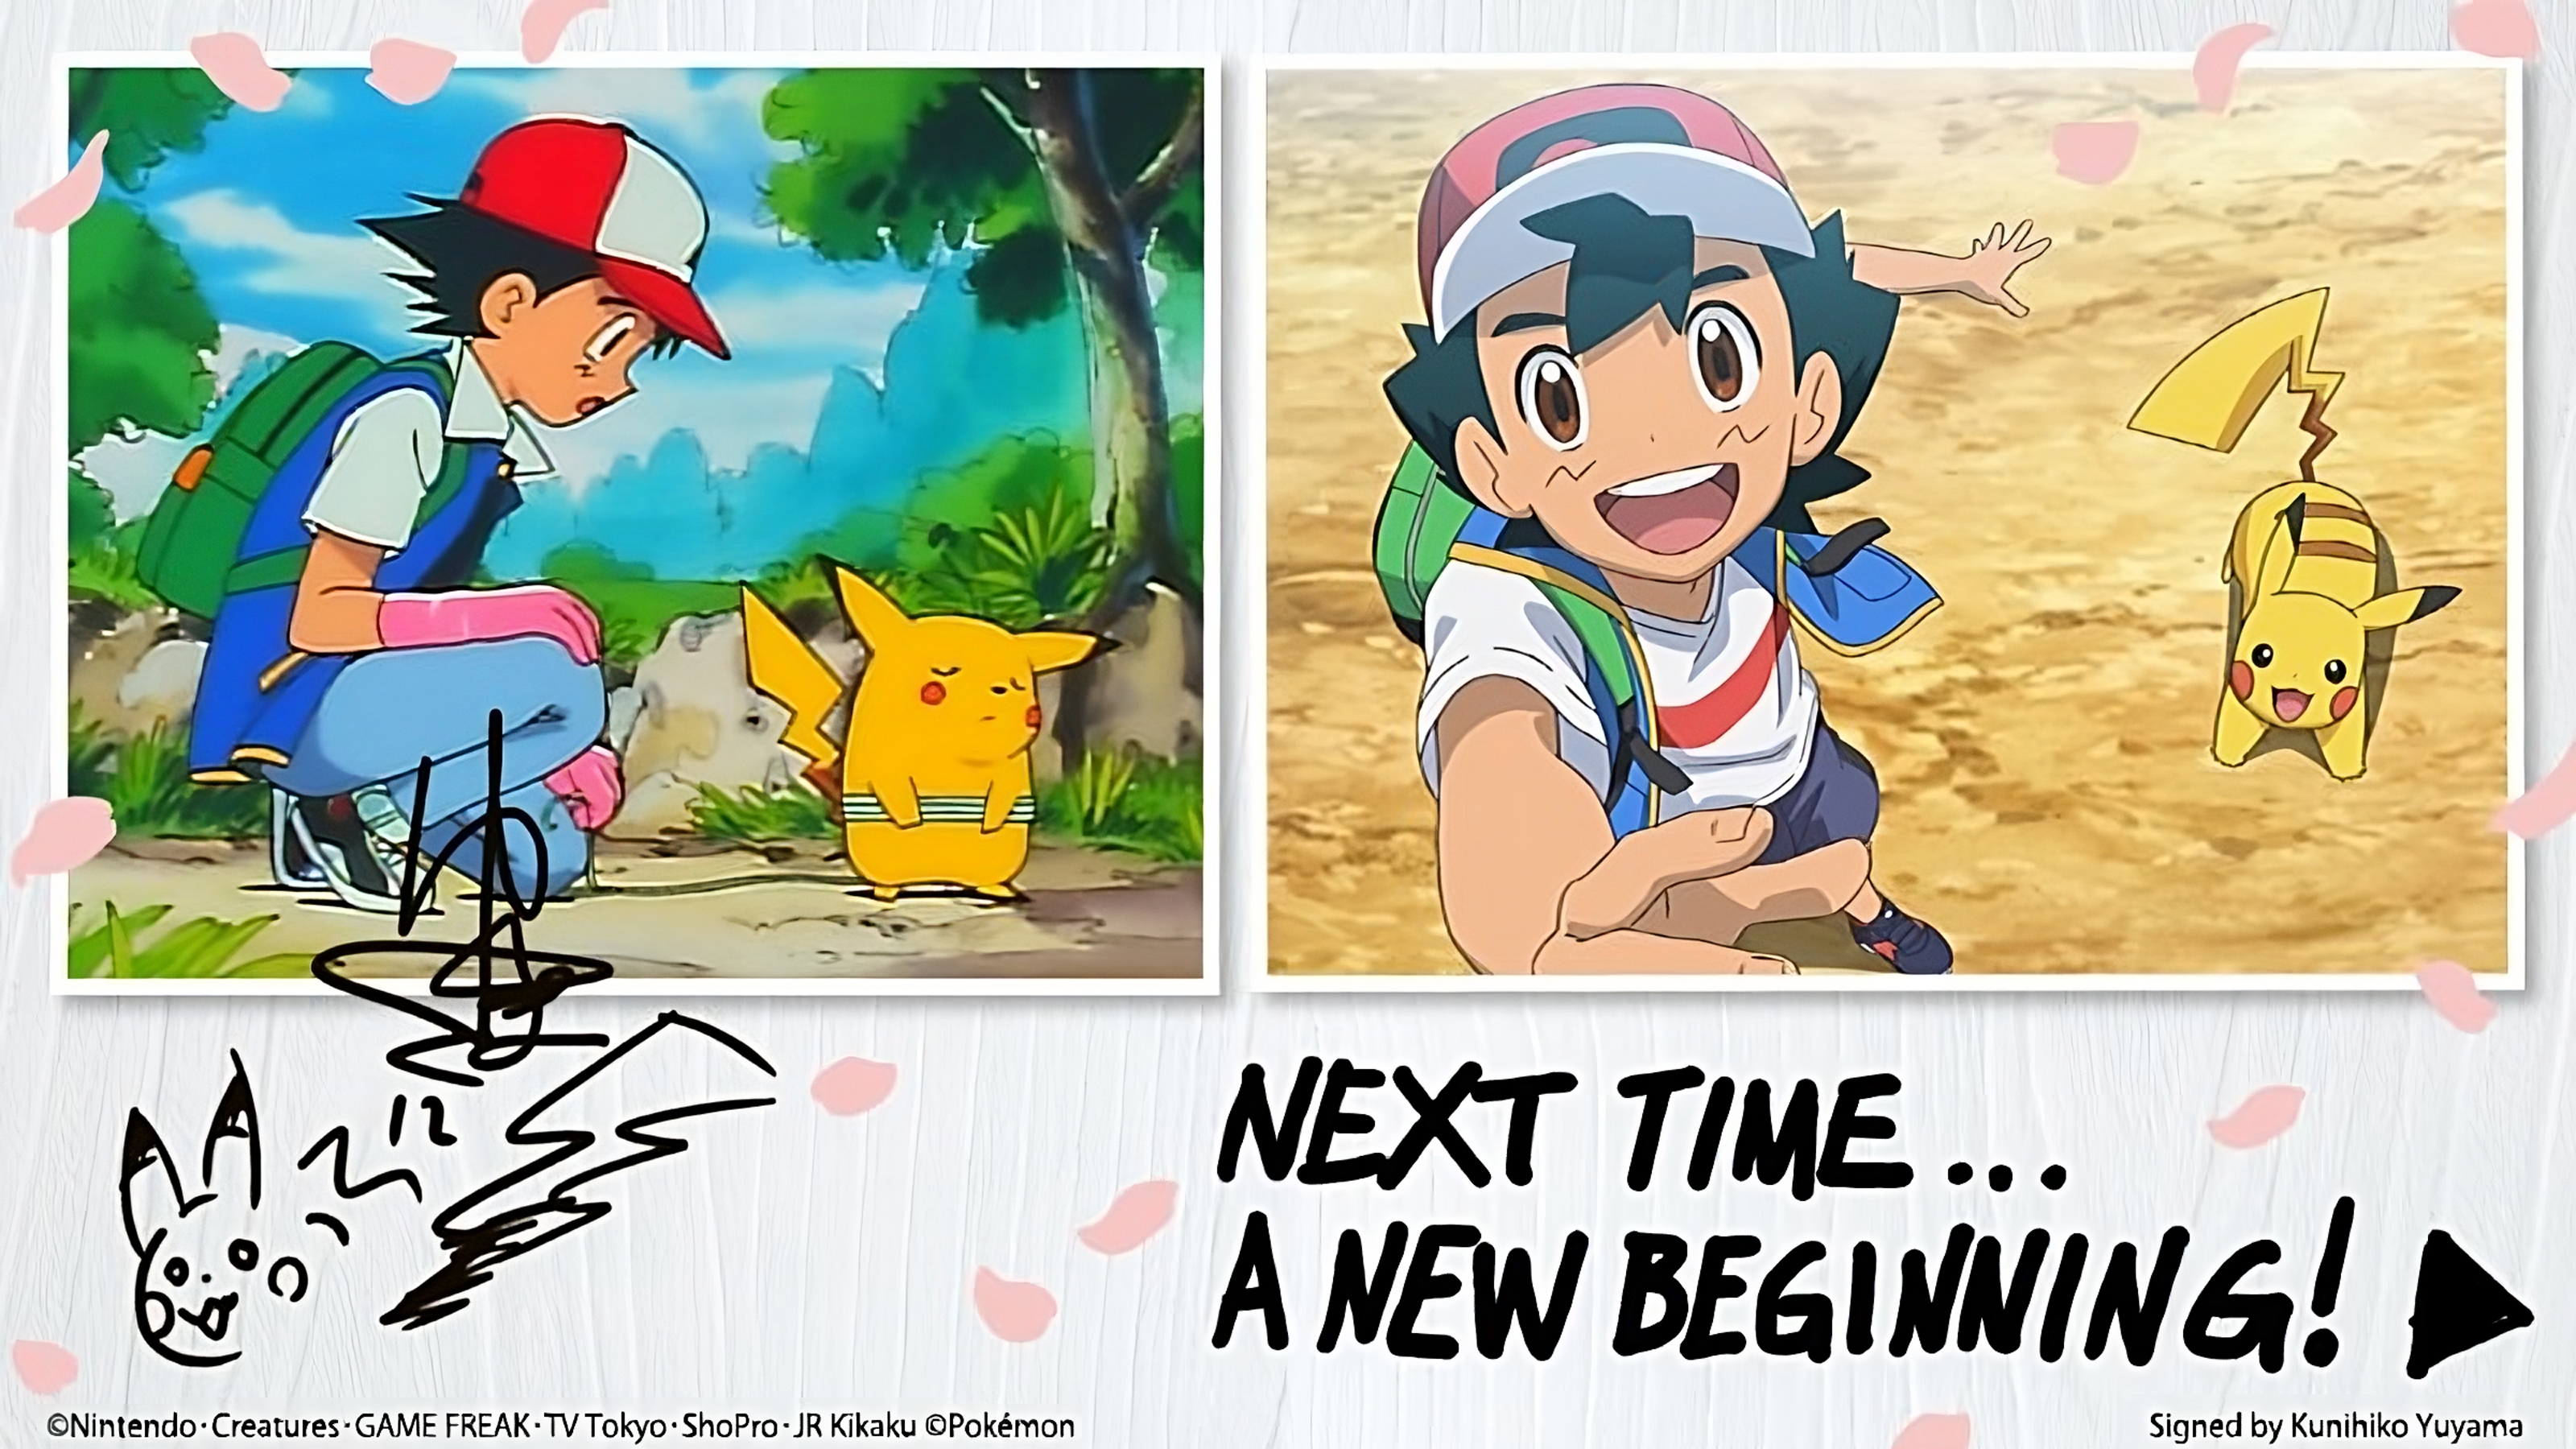 Fim de uma era: História de Ash em Pokémon acaba e série terá